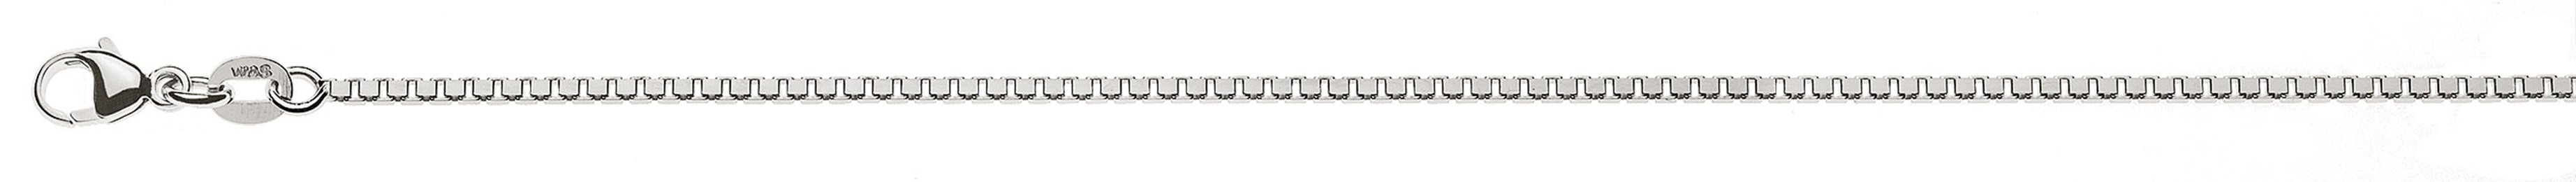 AURONOS Prestige Halskette Weissgold 18K Venezianerkette diamantiert 40cm 1.4mm